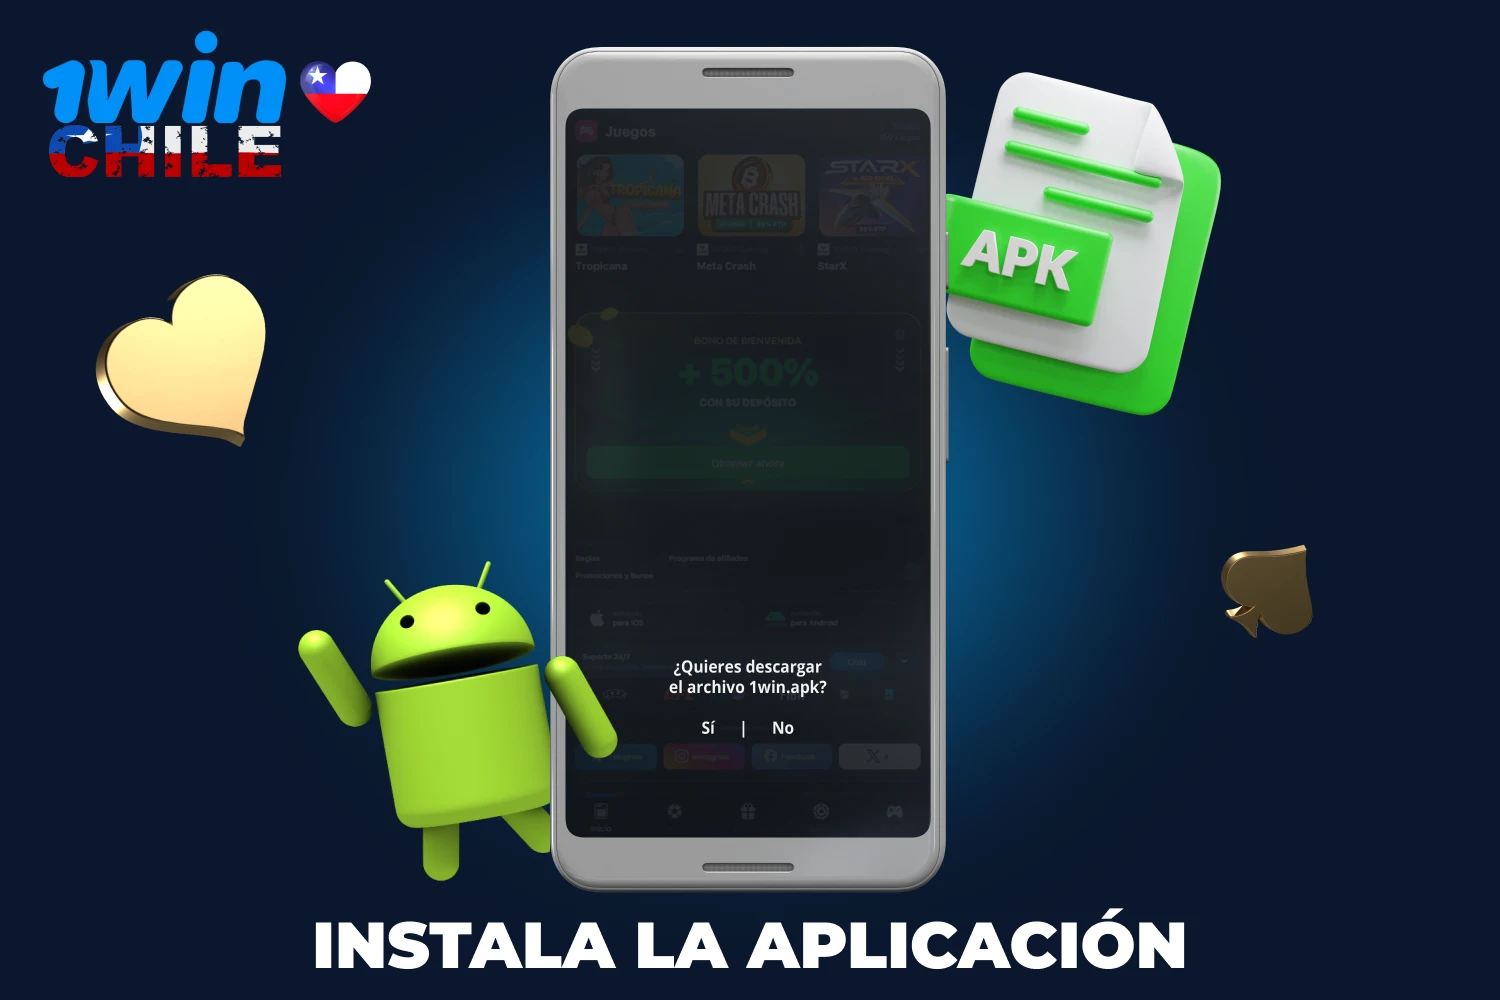 Una vez descargado el archivo apk en el dispositivo Android, los usuarios chilenos pueden iniciar el proceso de instalación de la app 1win